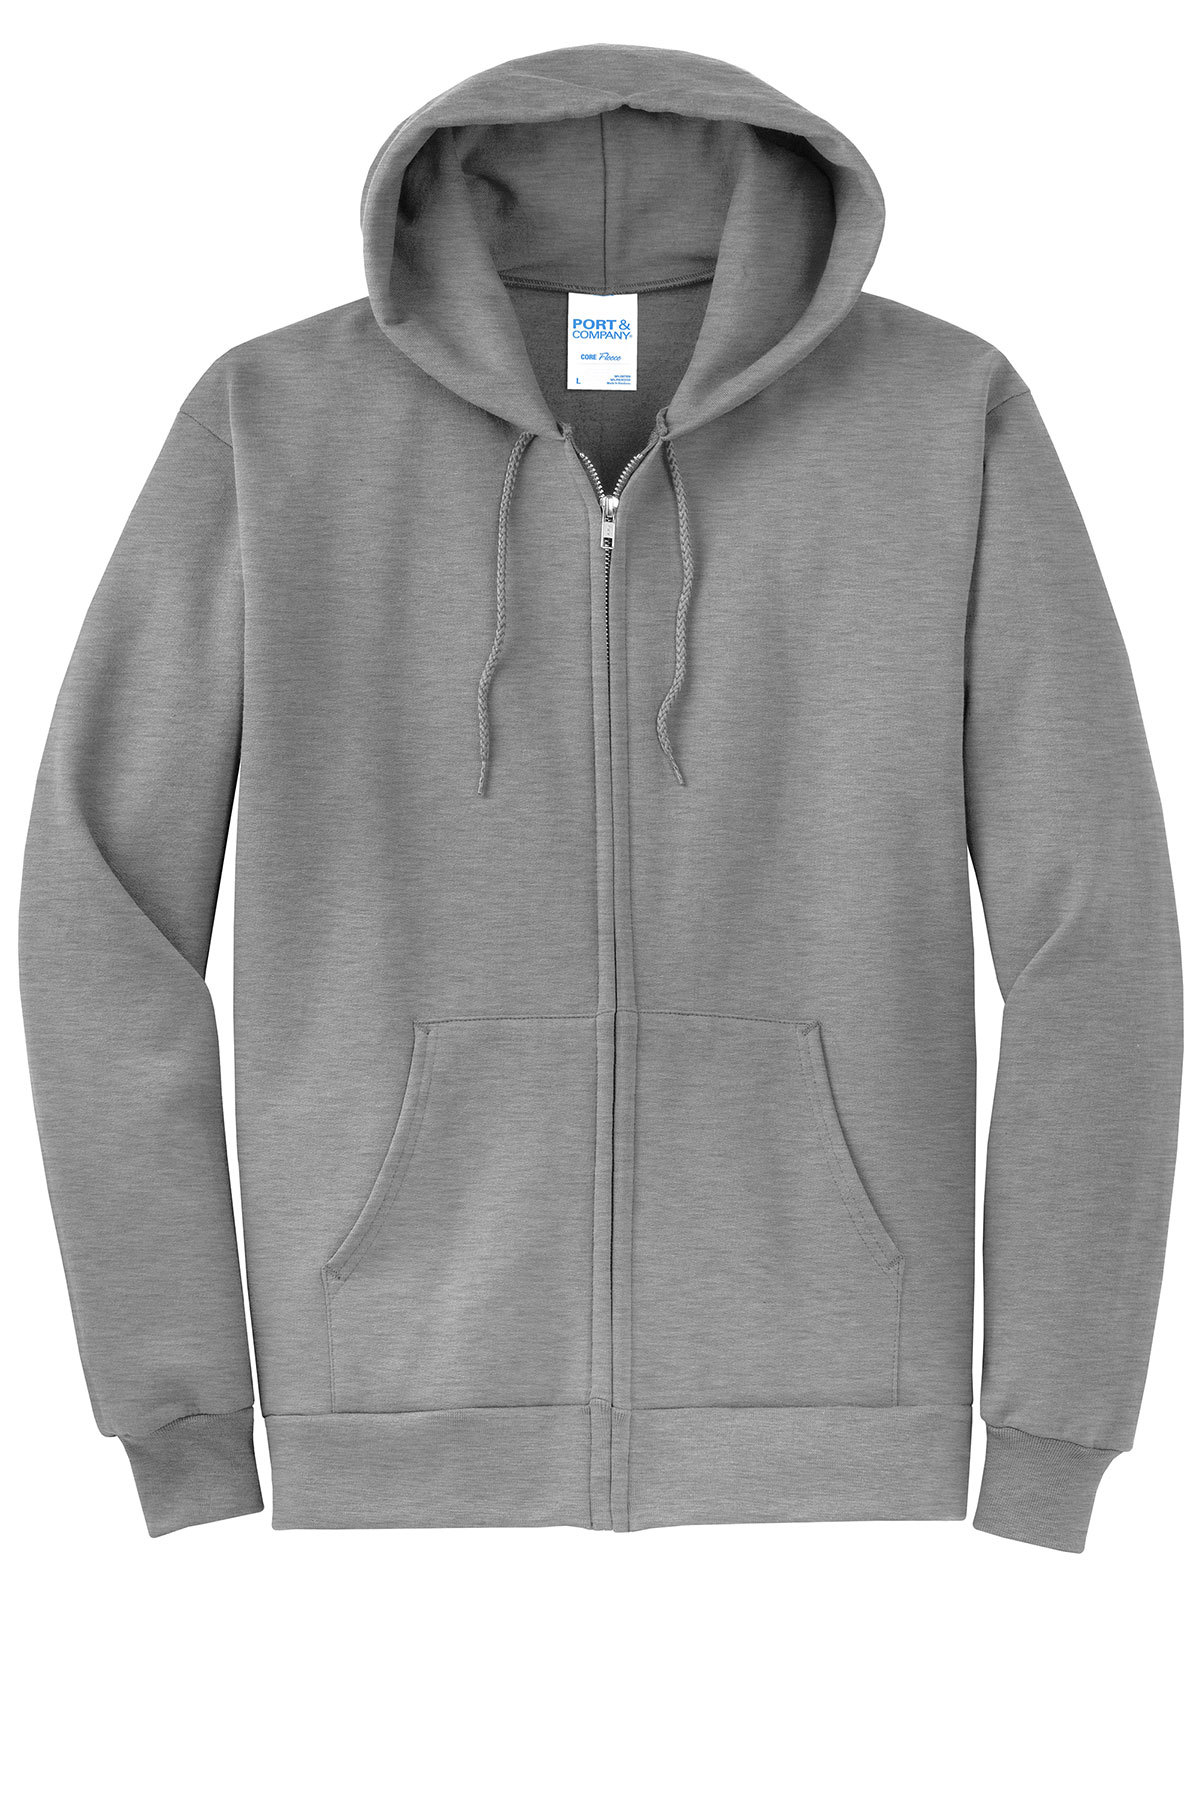 Port & Company Core Fleece Full-Zip Hooded Sweatshirt | Product | Port ...